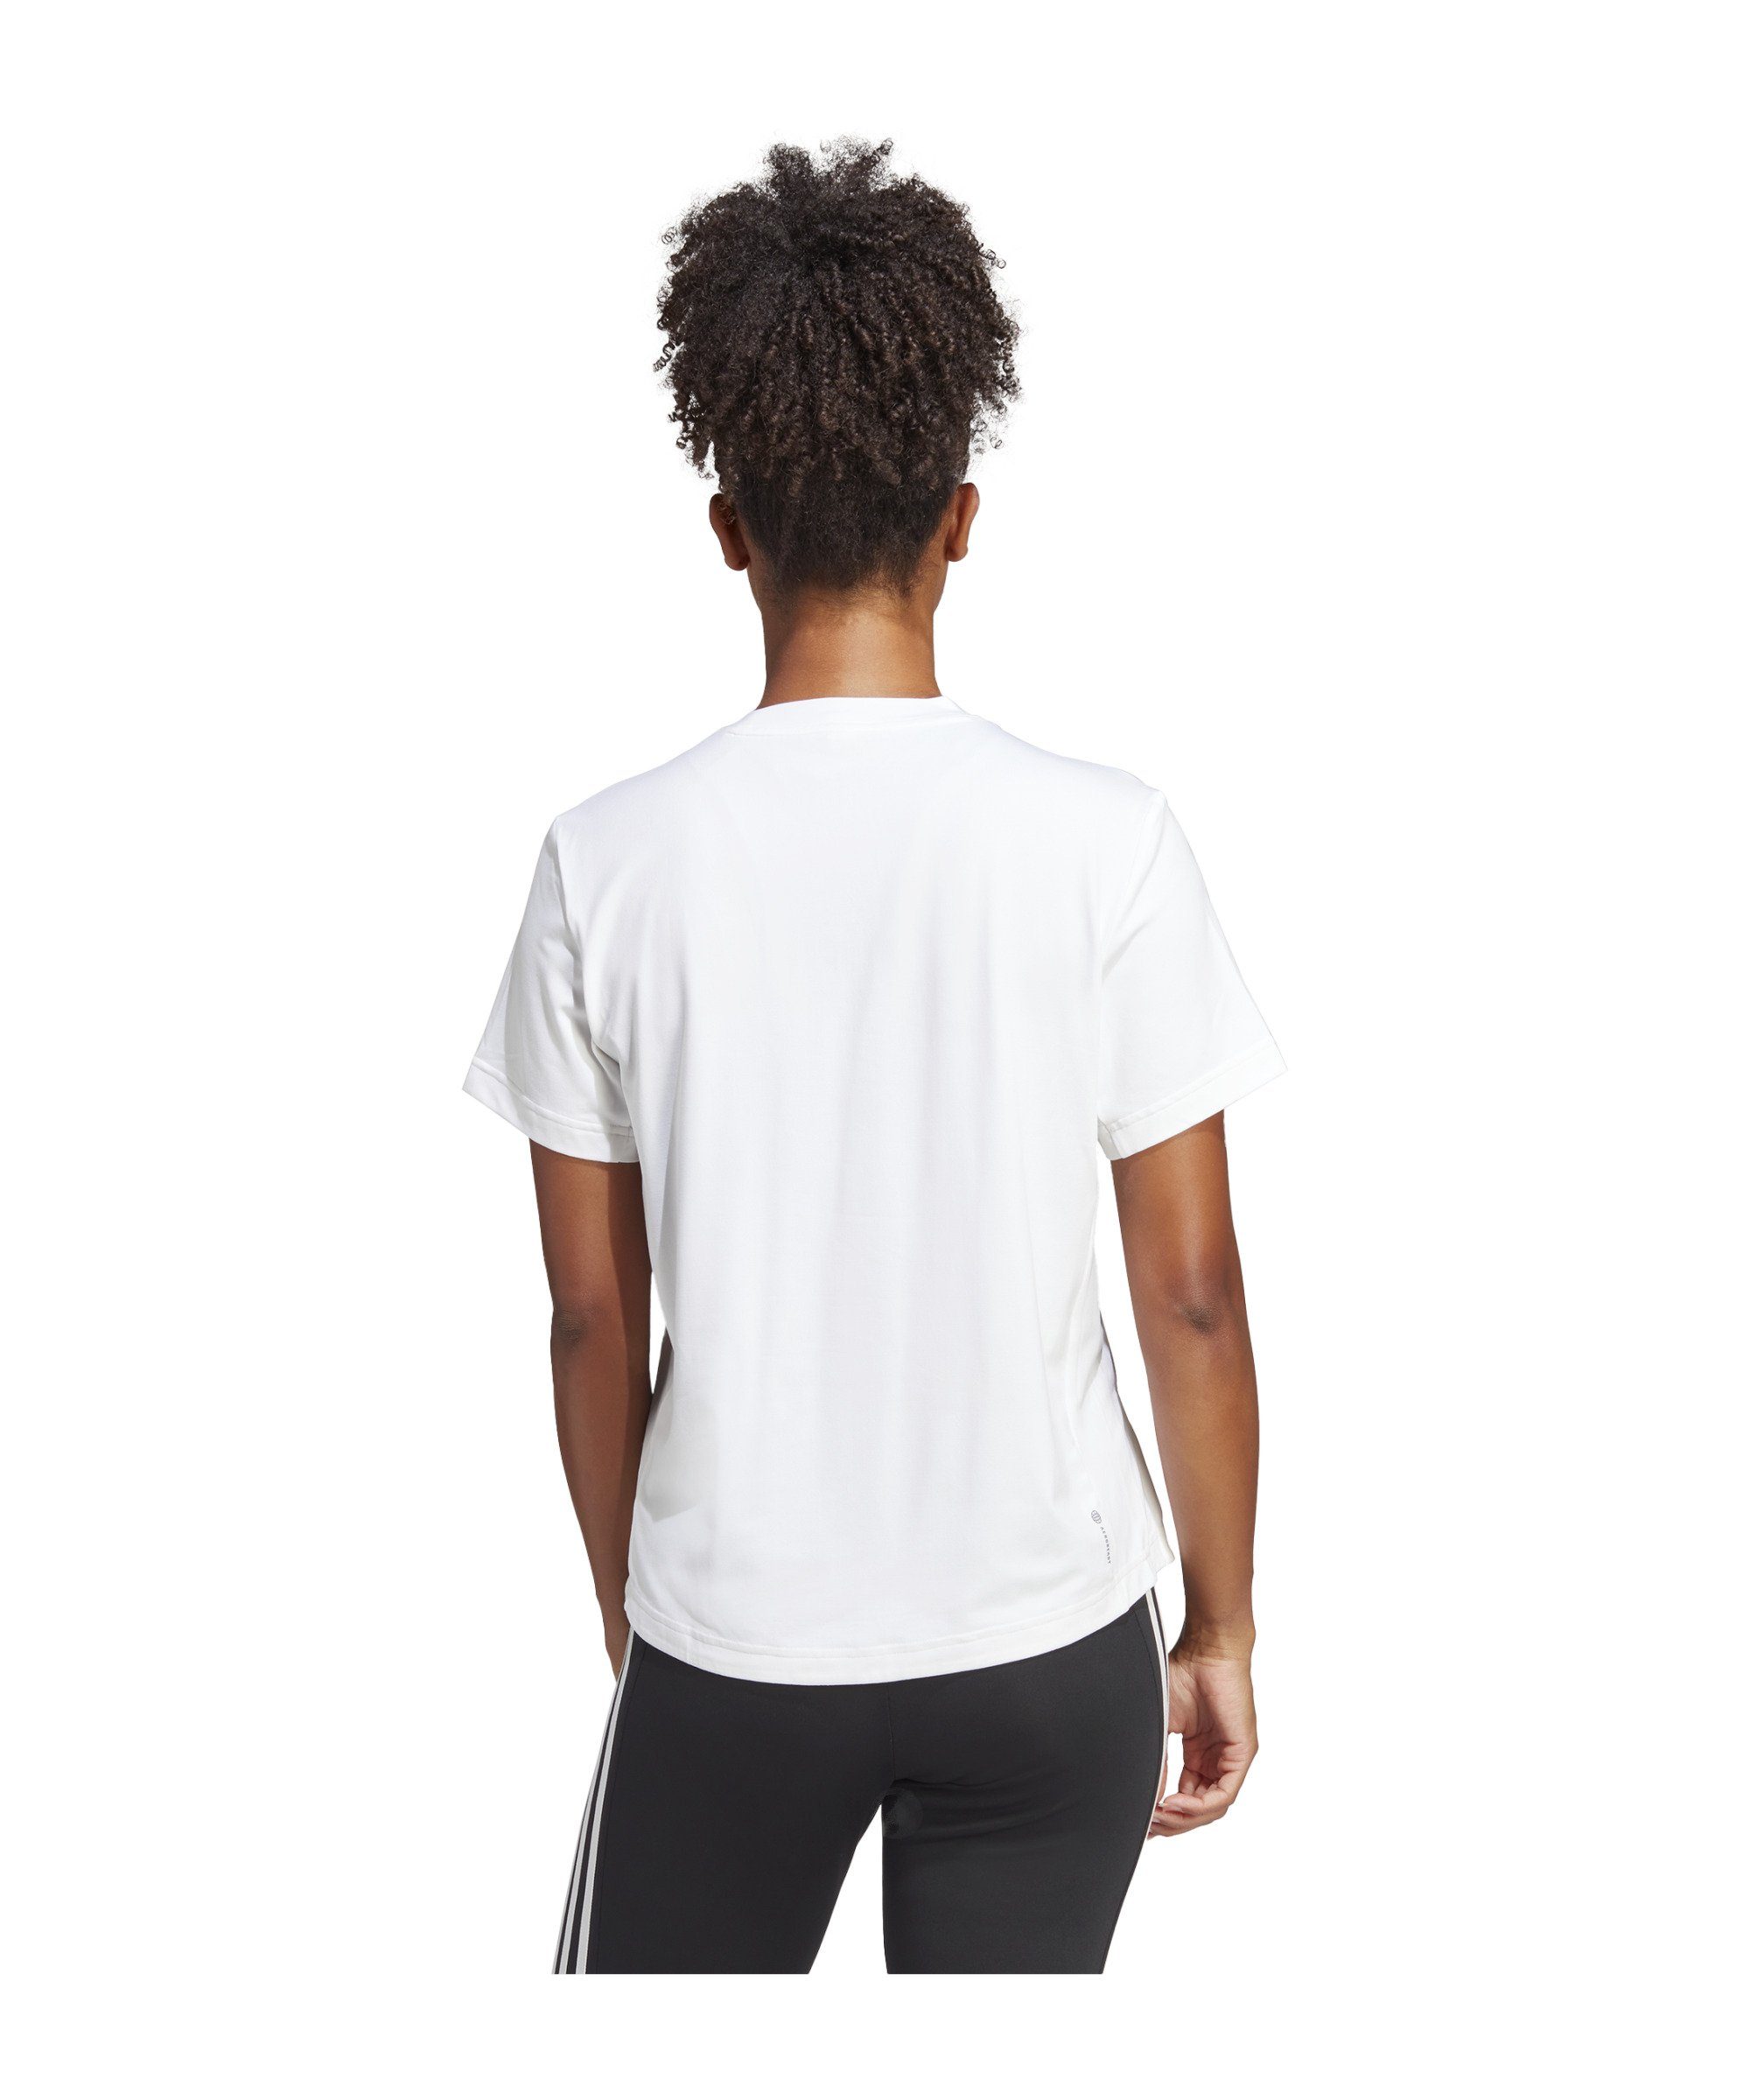 T-Shirt weiss Versatile default Performance Damen adidas T-Shirt